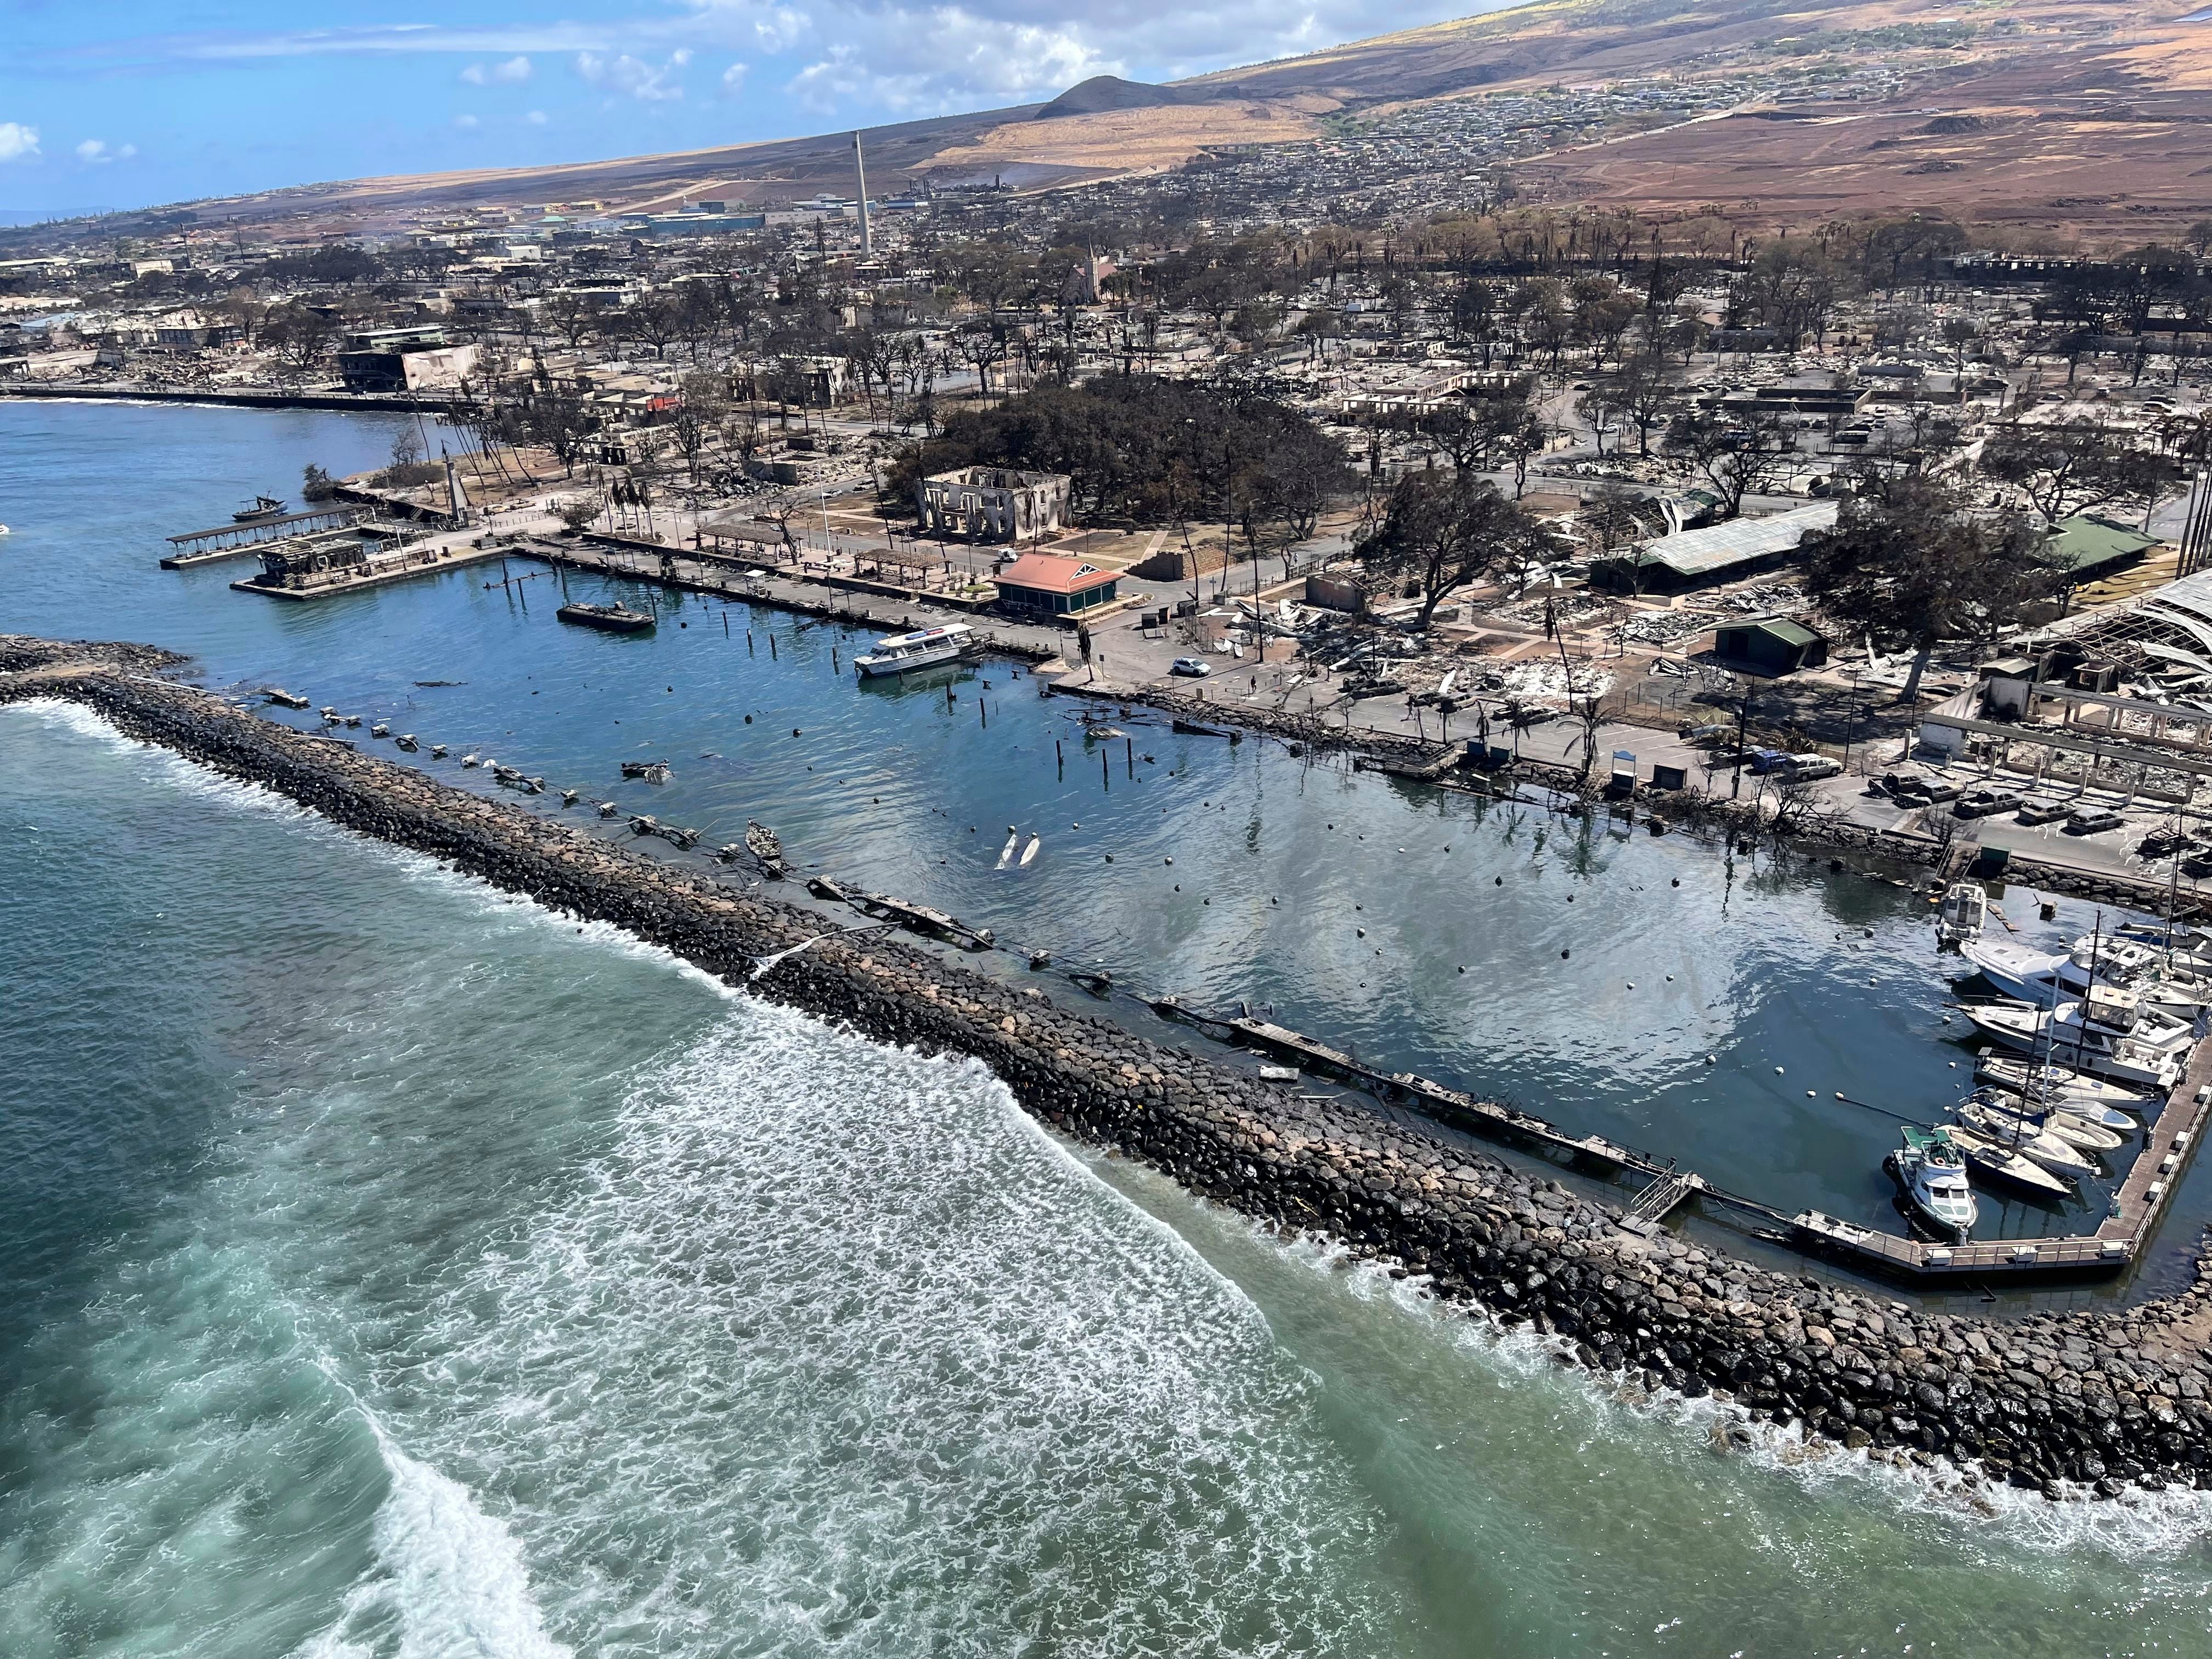 Zonas quemadas en Lahaina. Los daños ascienden a más de 5 mil millones de dólares (Departamento hawaiano de recursos naturales via AP)